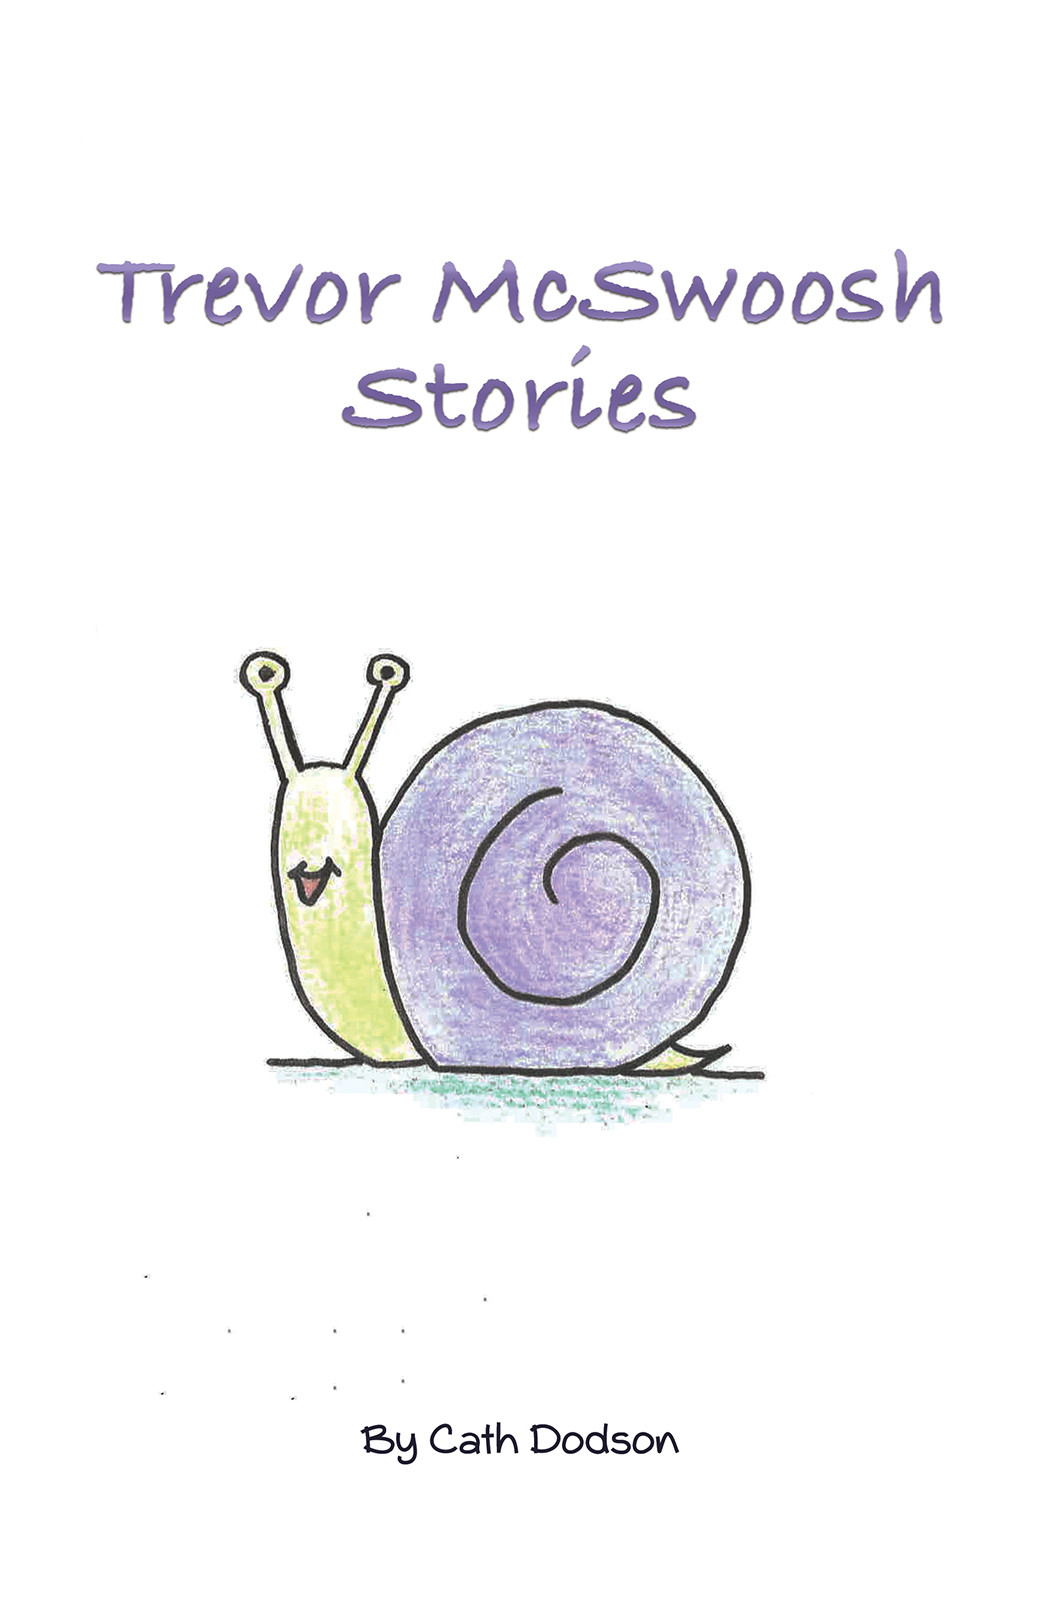 Trevor McSwoosh Stories